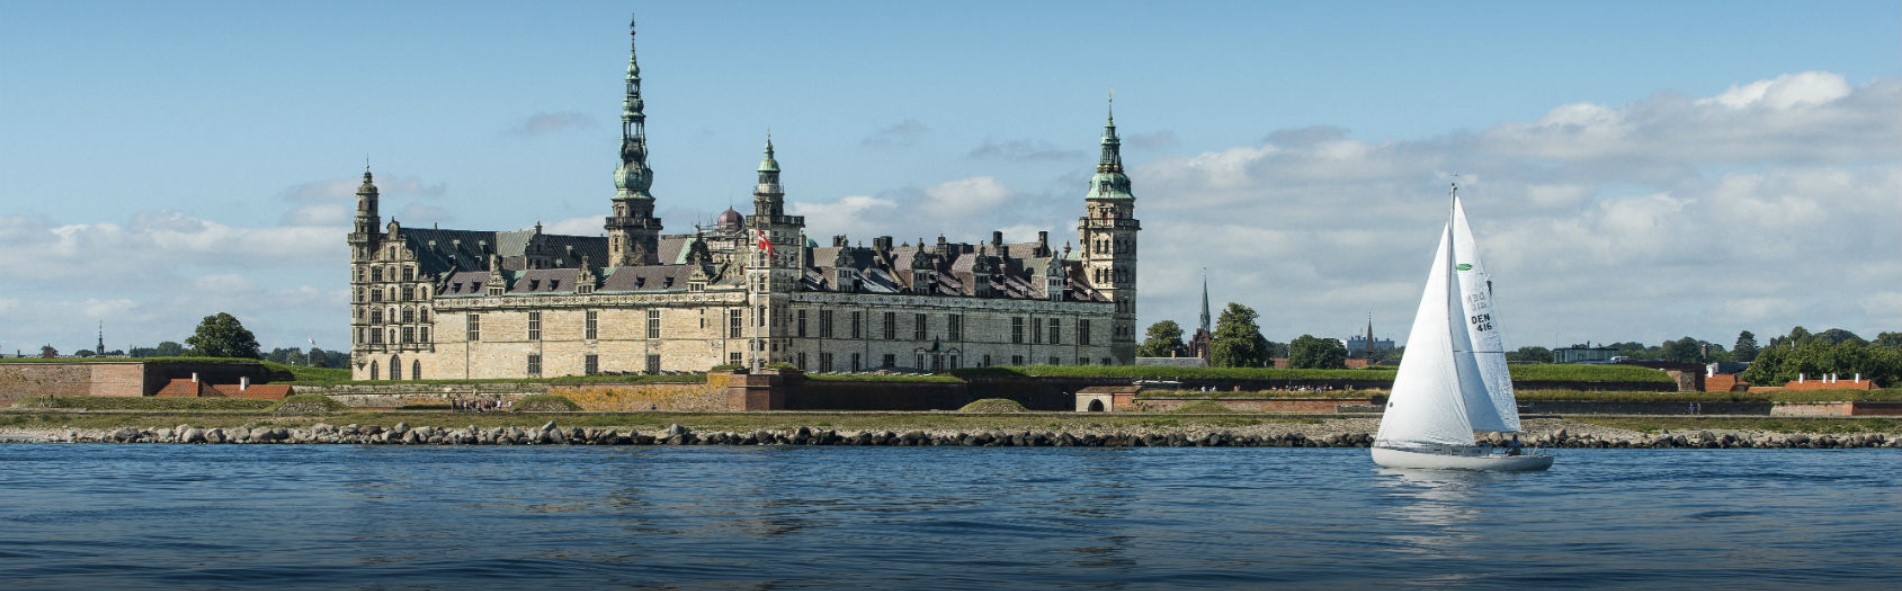 햄릿의 배경이 된 덴마크 헬싱외르 Helsingør 지역, 크론보르 성 (Kronborg Castle)  https://kongeligeslotte.dk/en/palaces-and-gardens/kronborg-castle.html